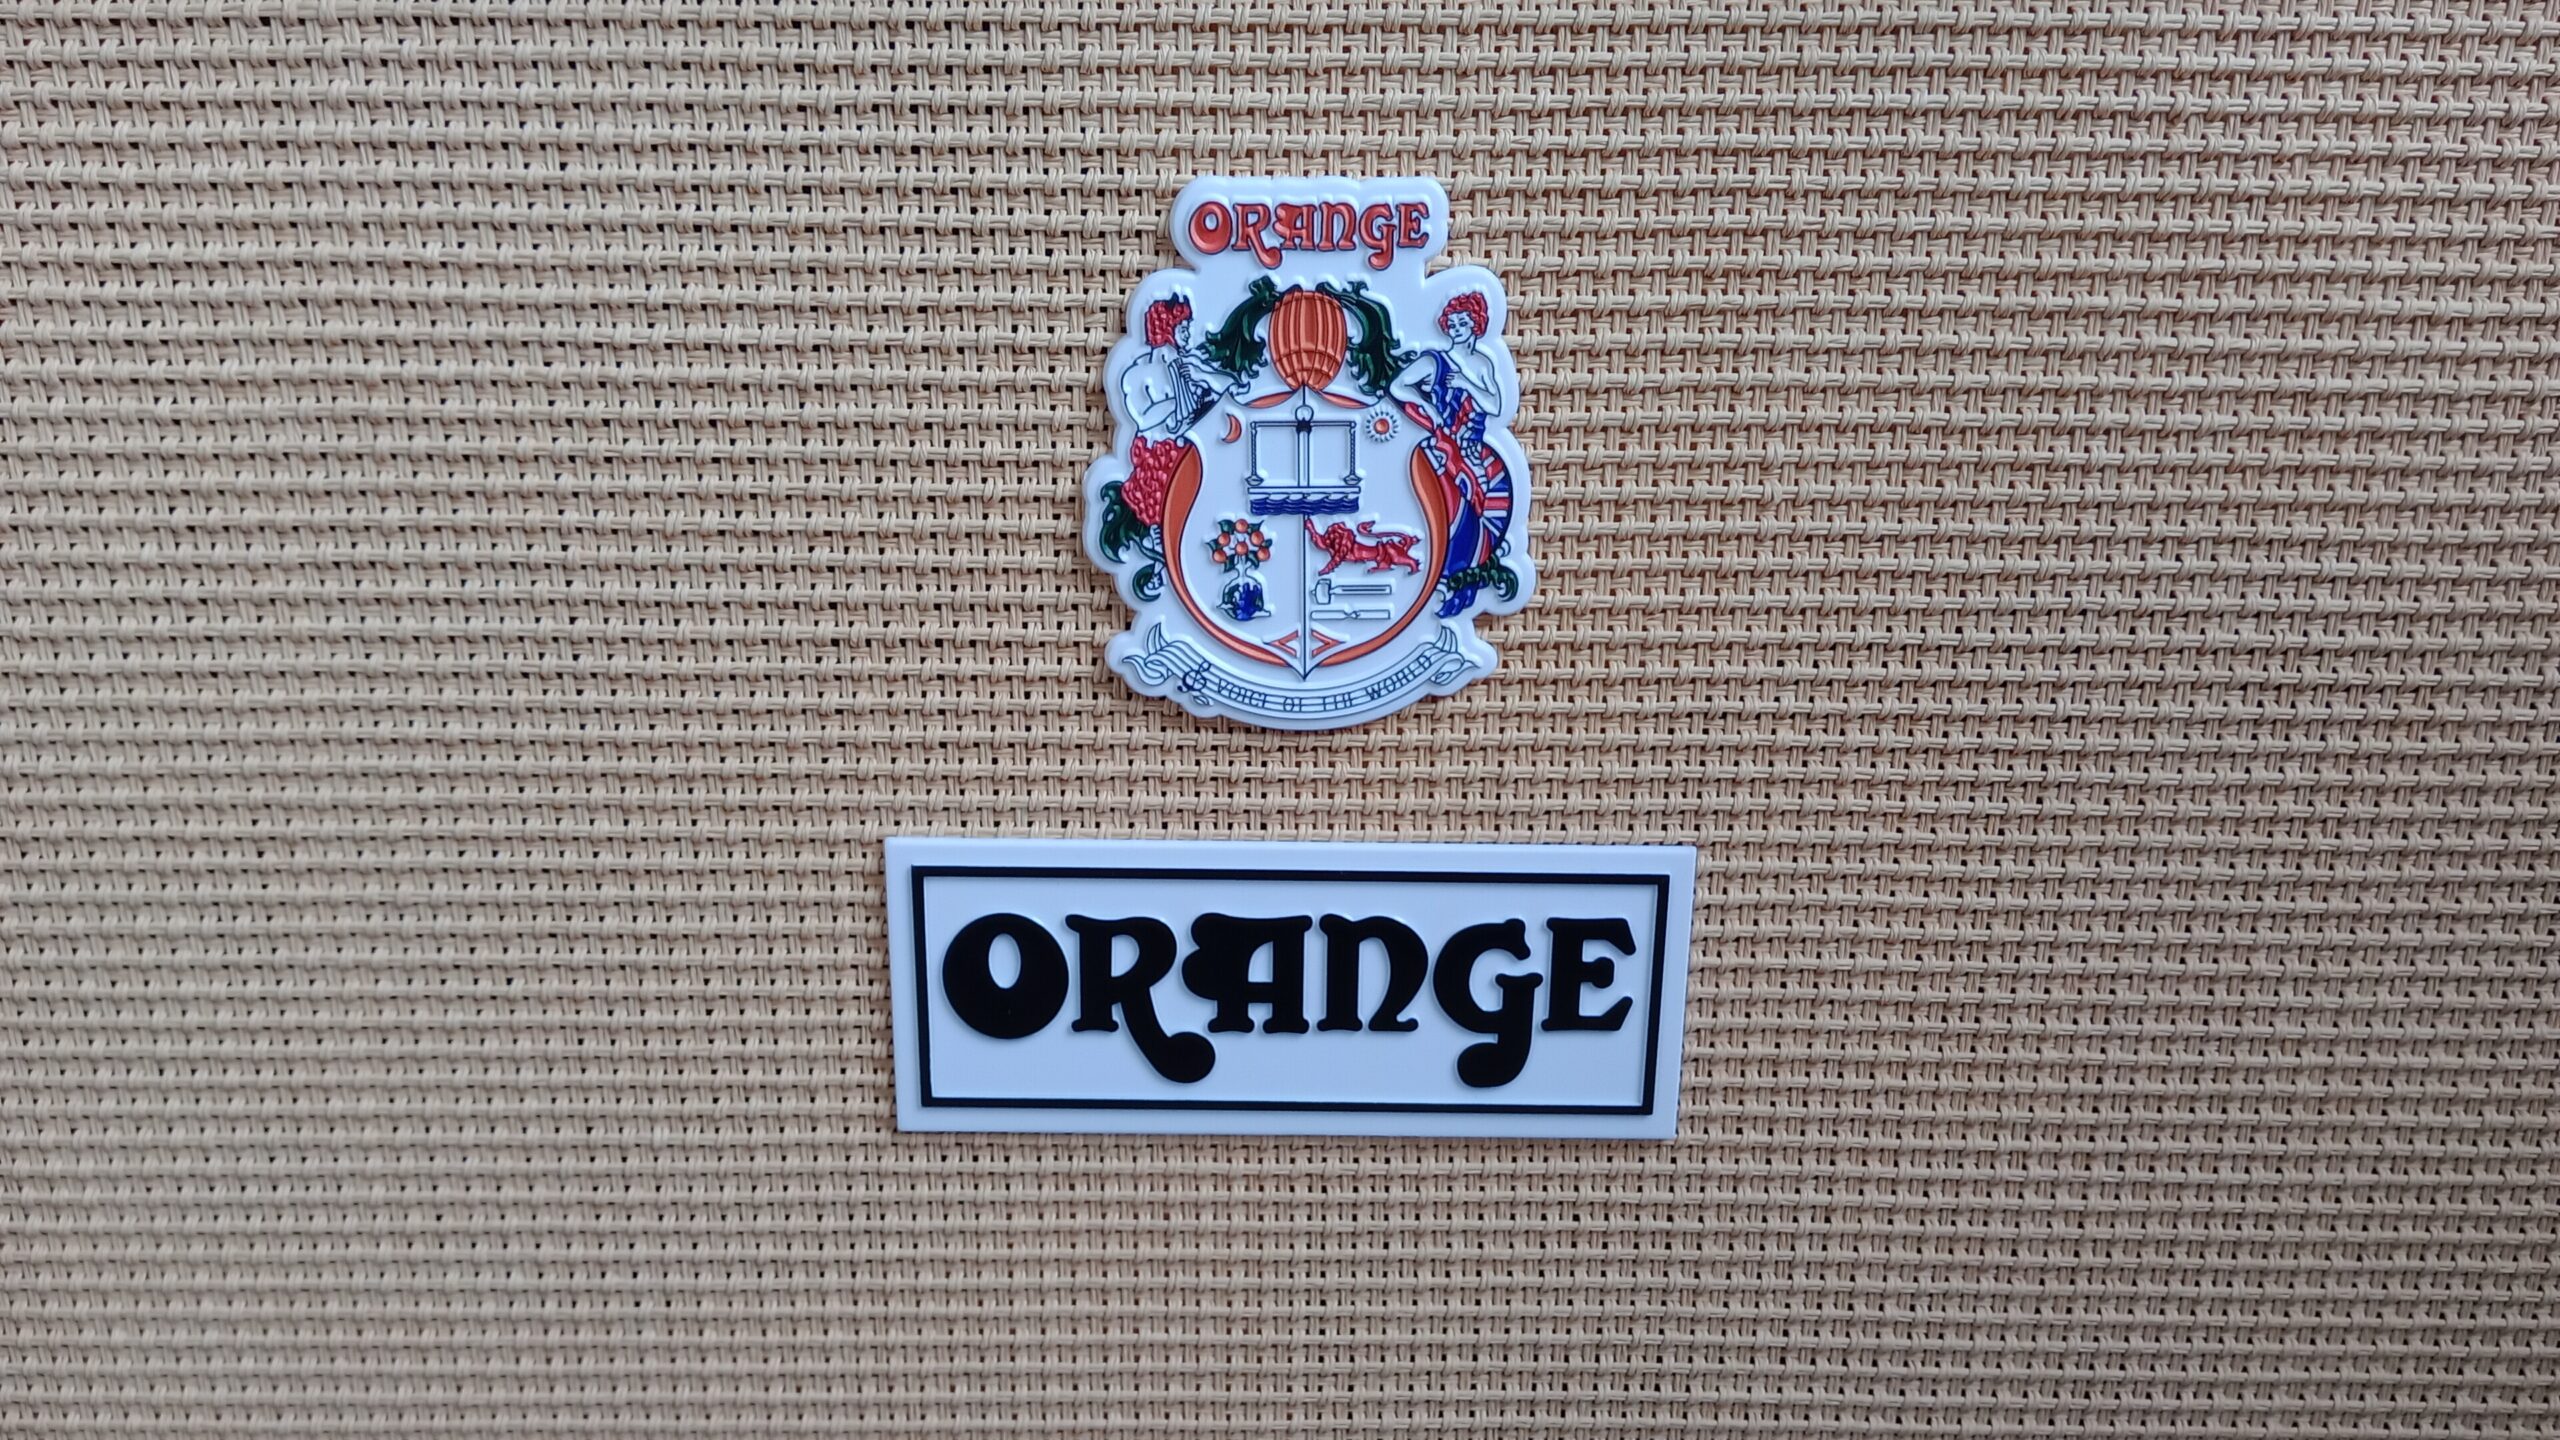 La insignia en un amplificador de guitarra que dice 'Orange'